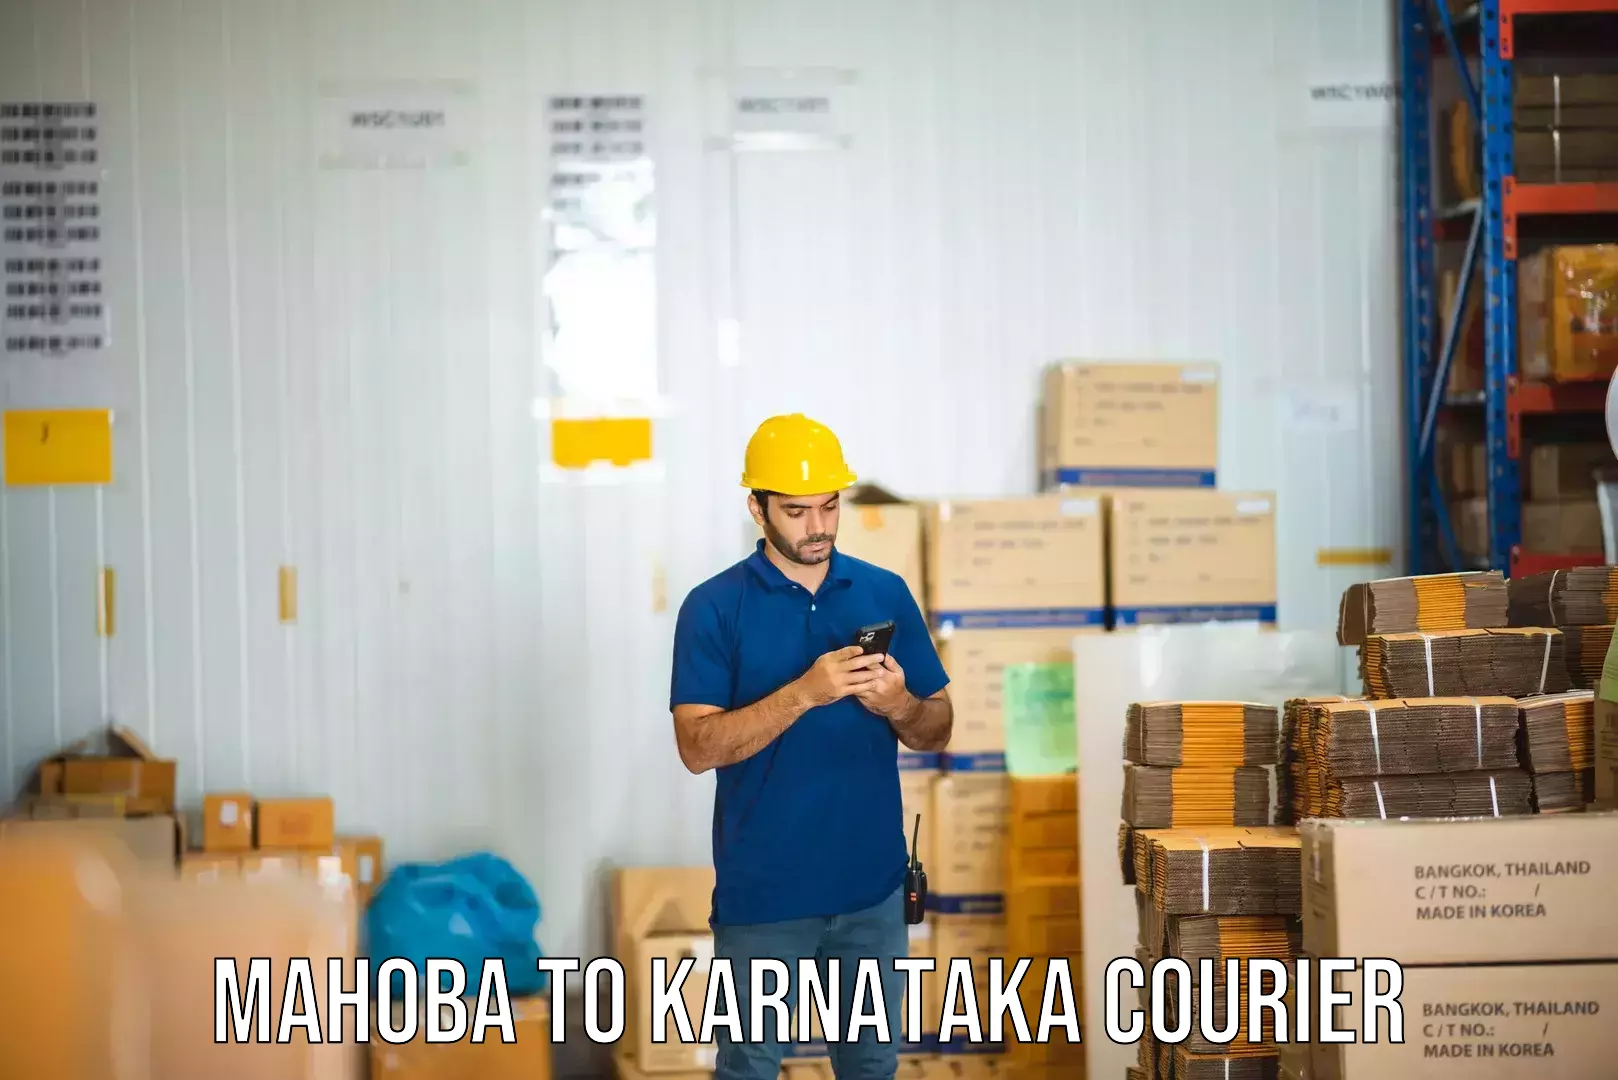 Cargo courier service Mahoba to Karnataka